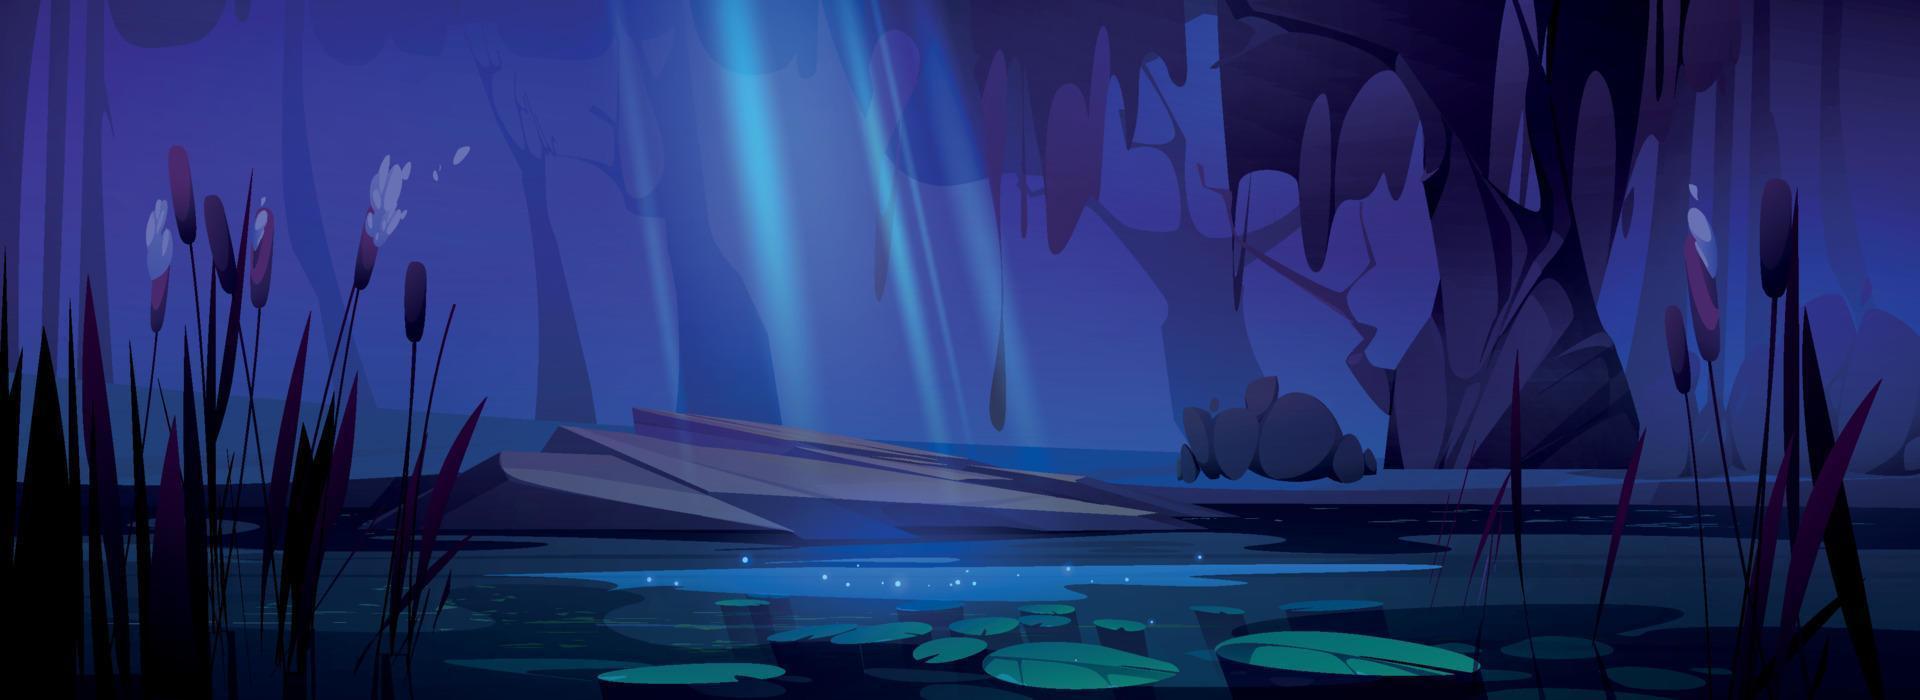 dibujos animados estanque con totora a noche vector